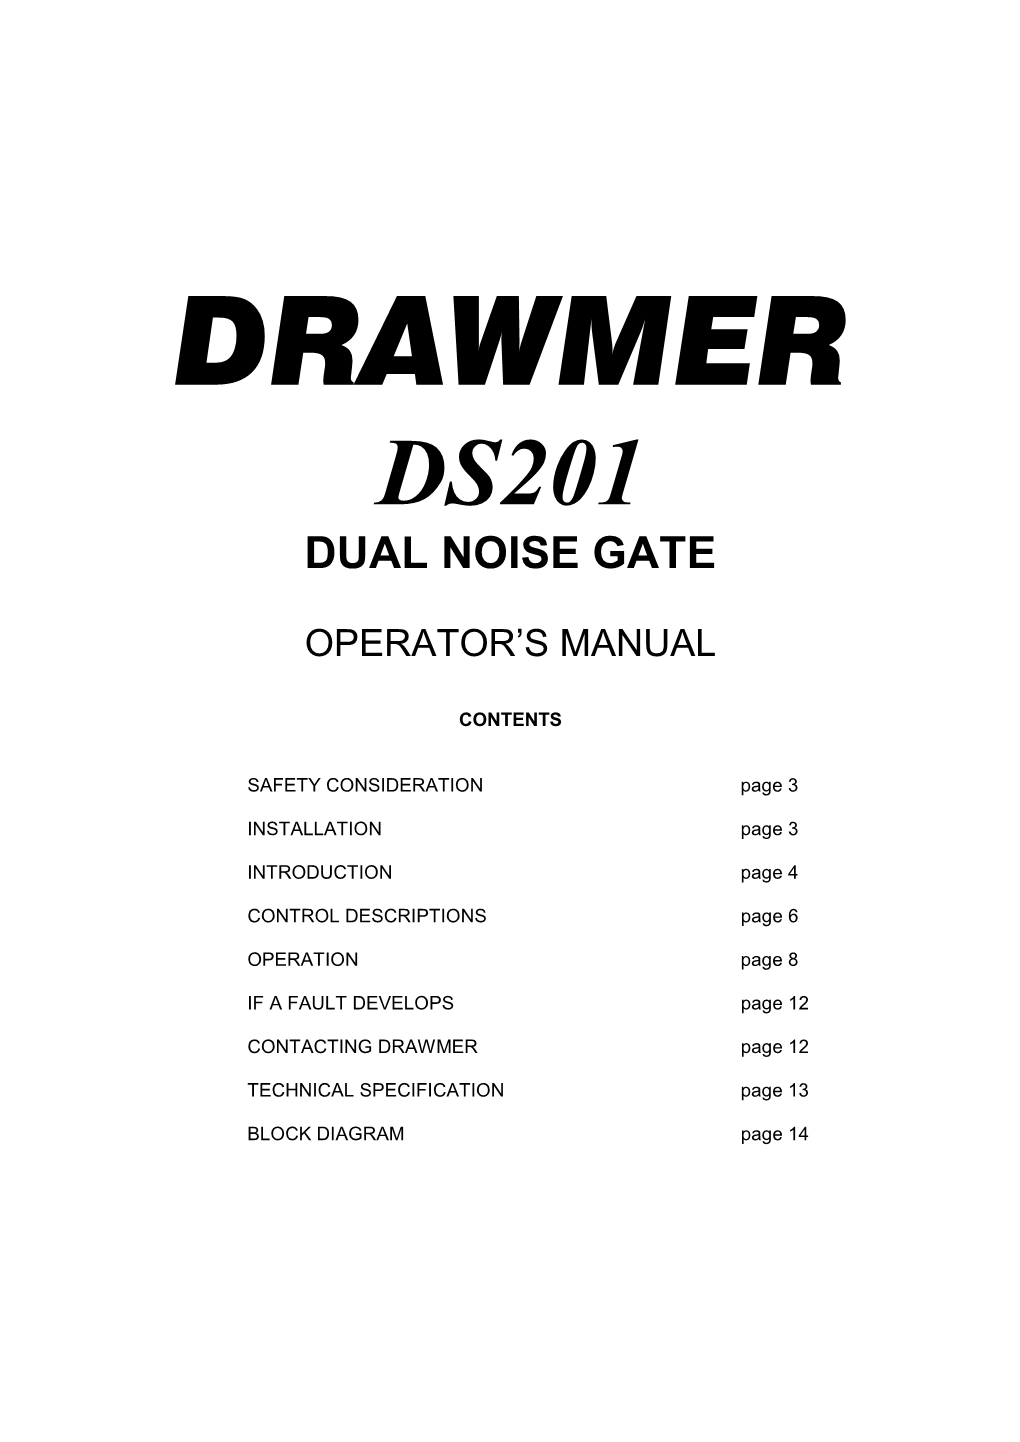 Dual Noise Gate